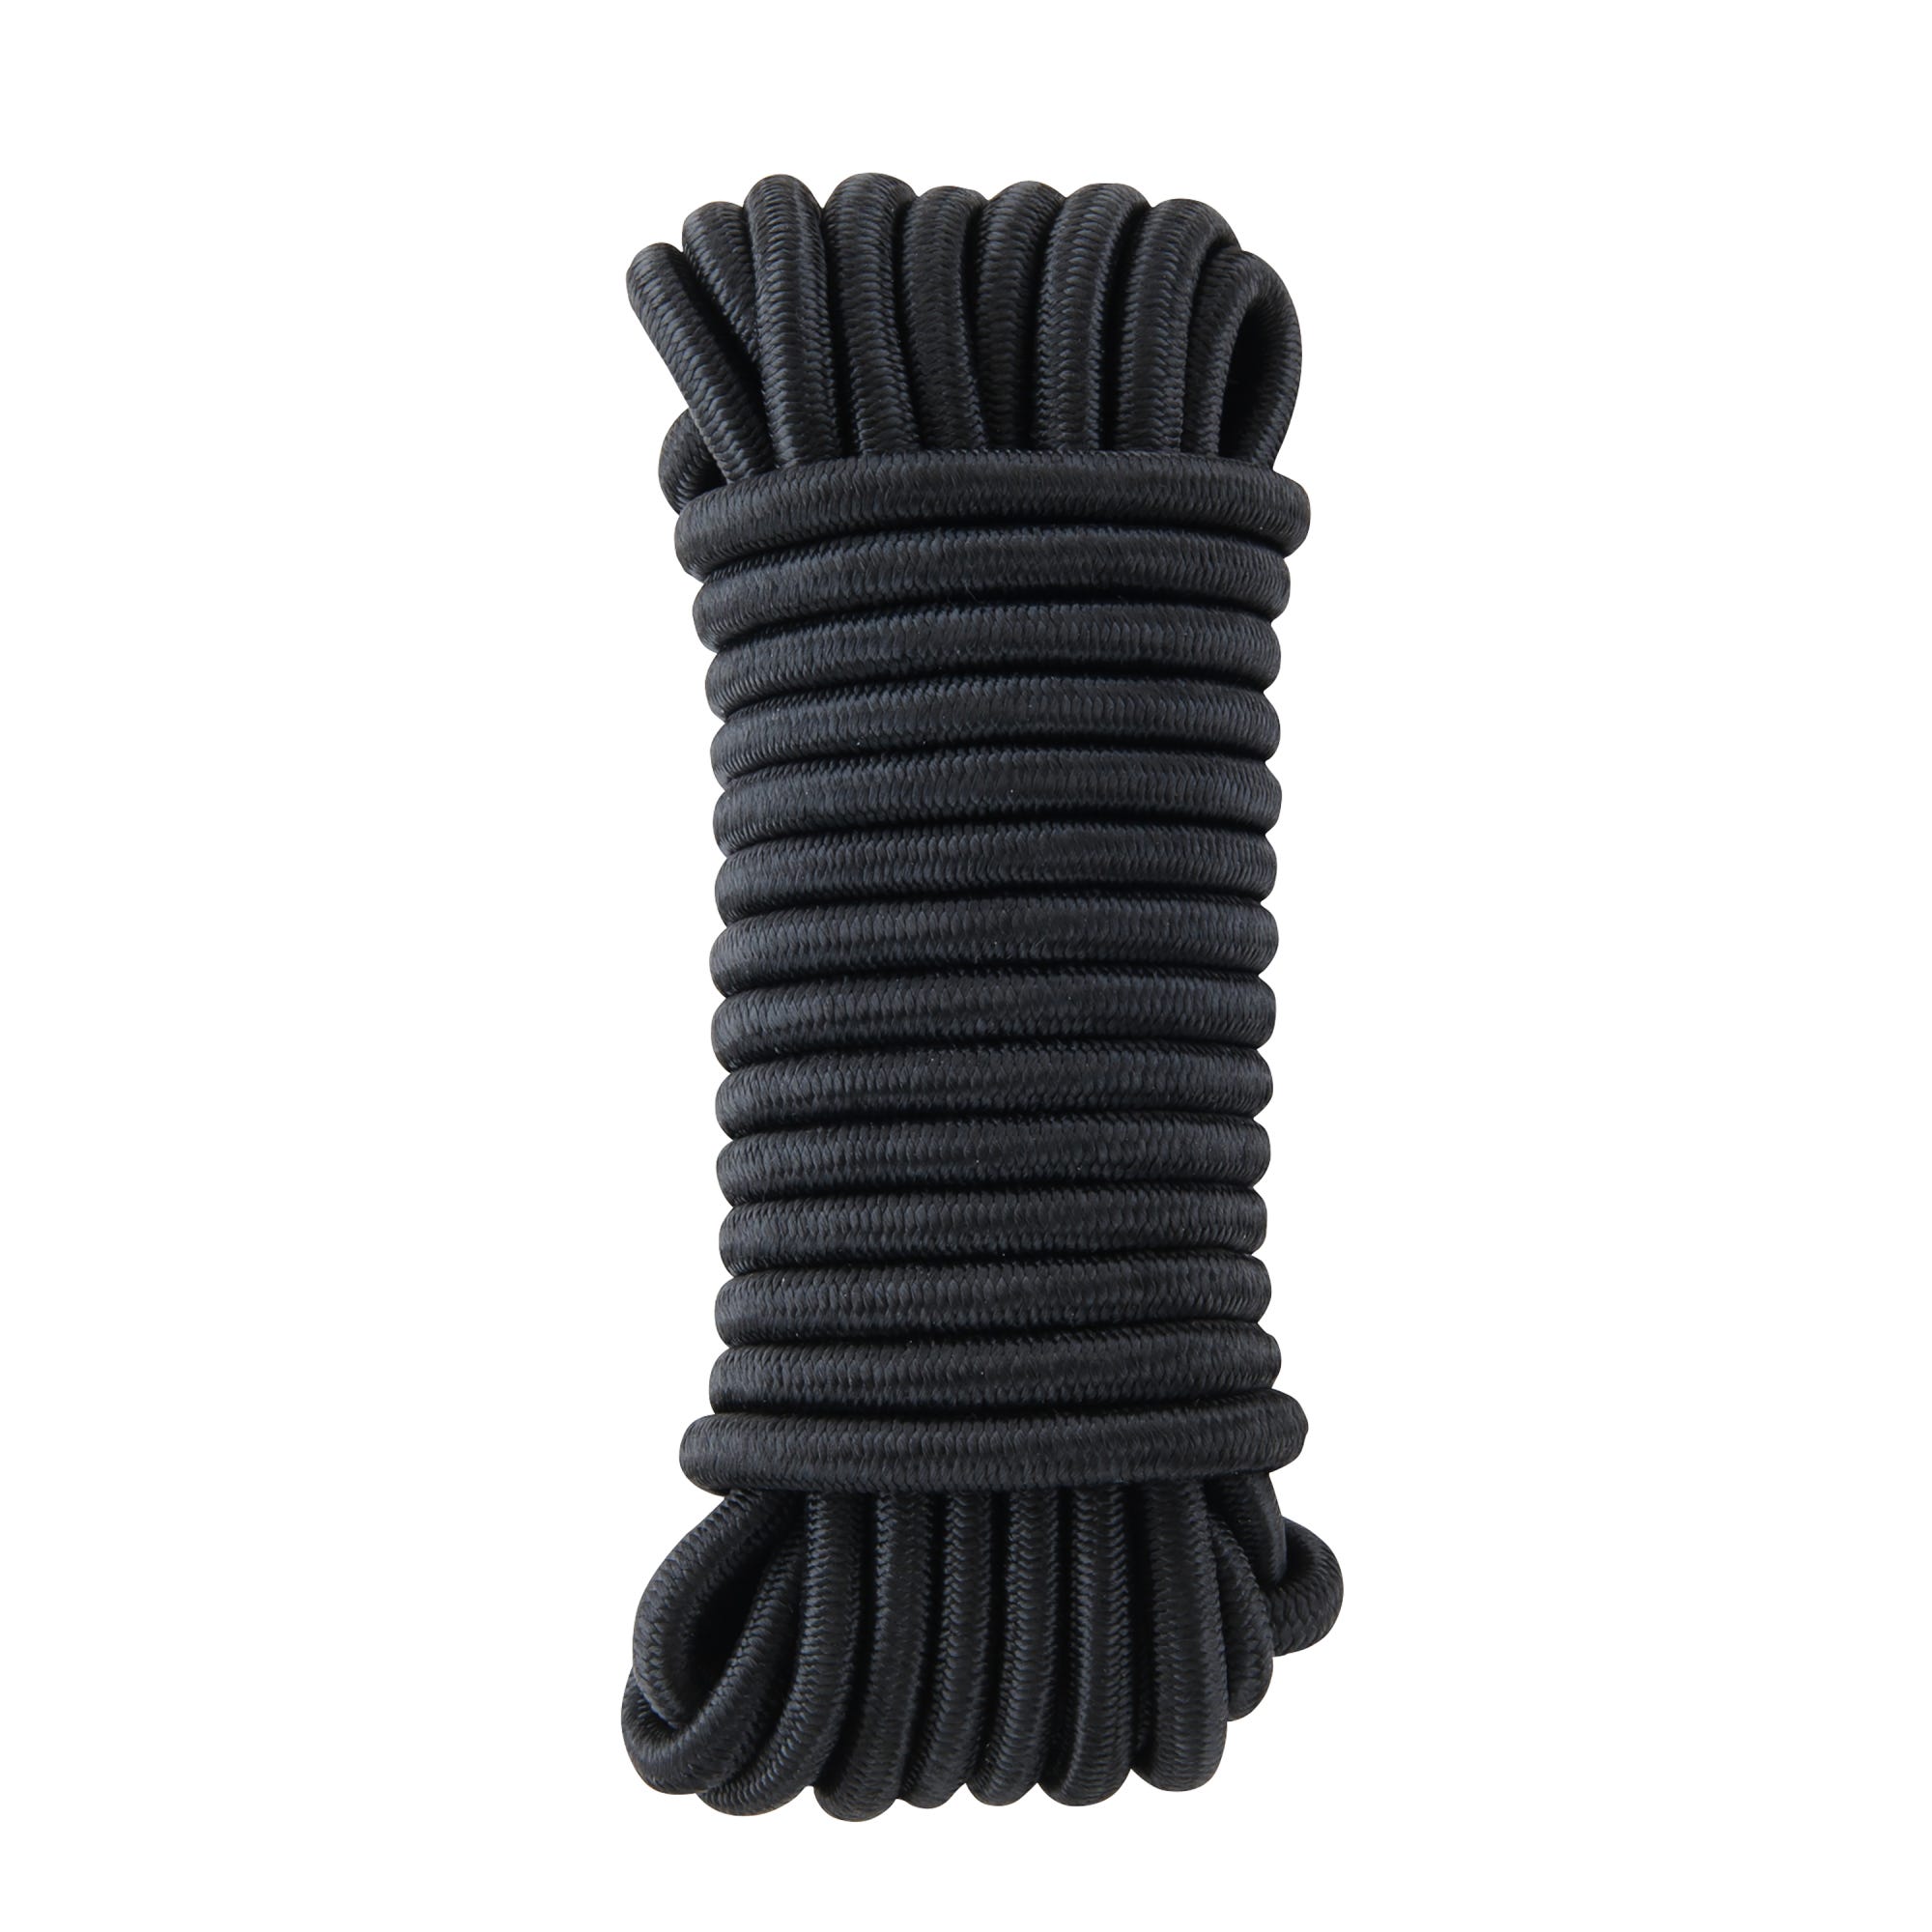 Cuerda elástica Negra 100 metros - Calidad Profesional TECPLAST 9SW - Cable  elástico - Diámetro 9 mm - Hecho en Francia